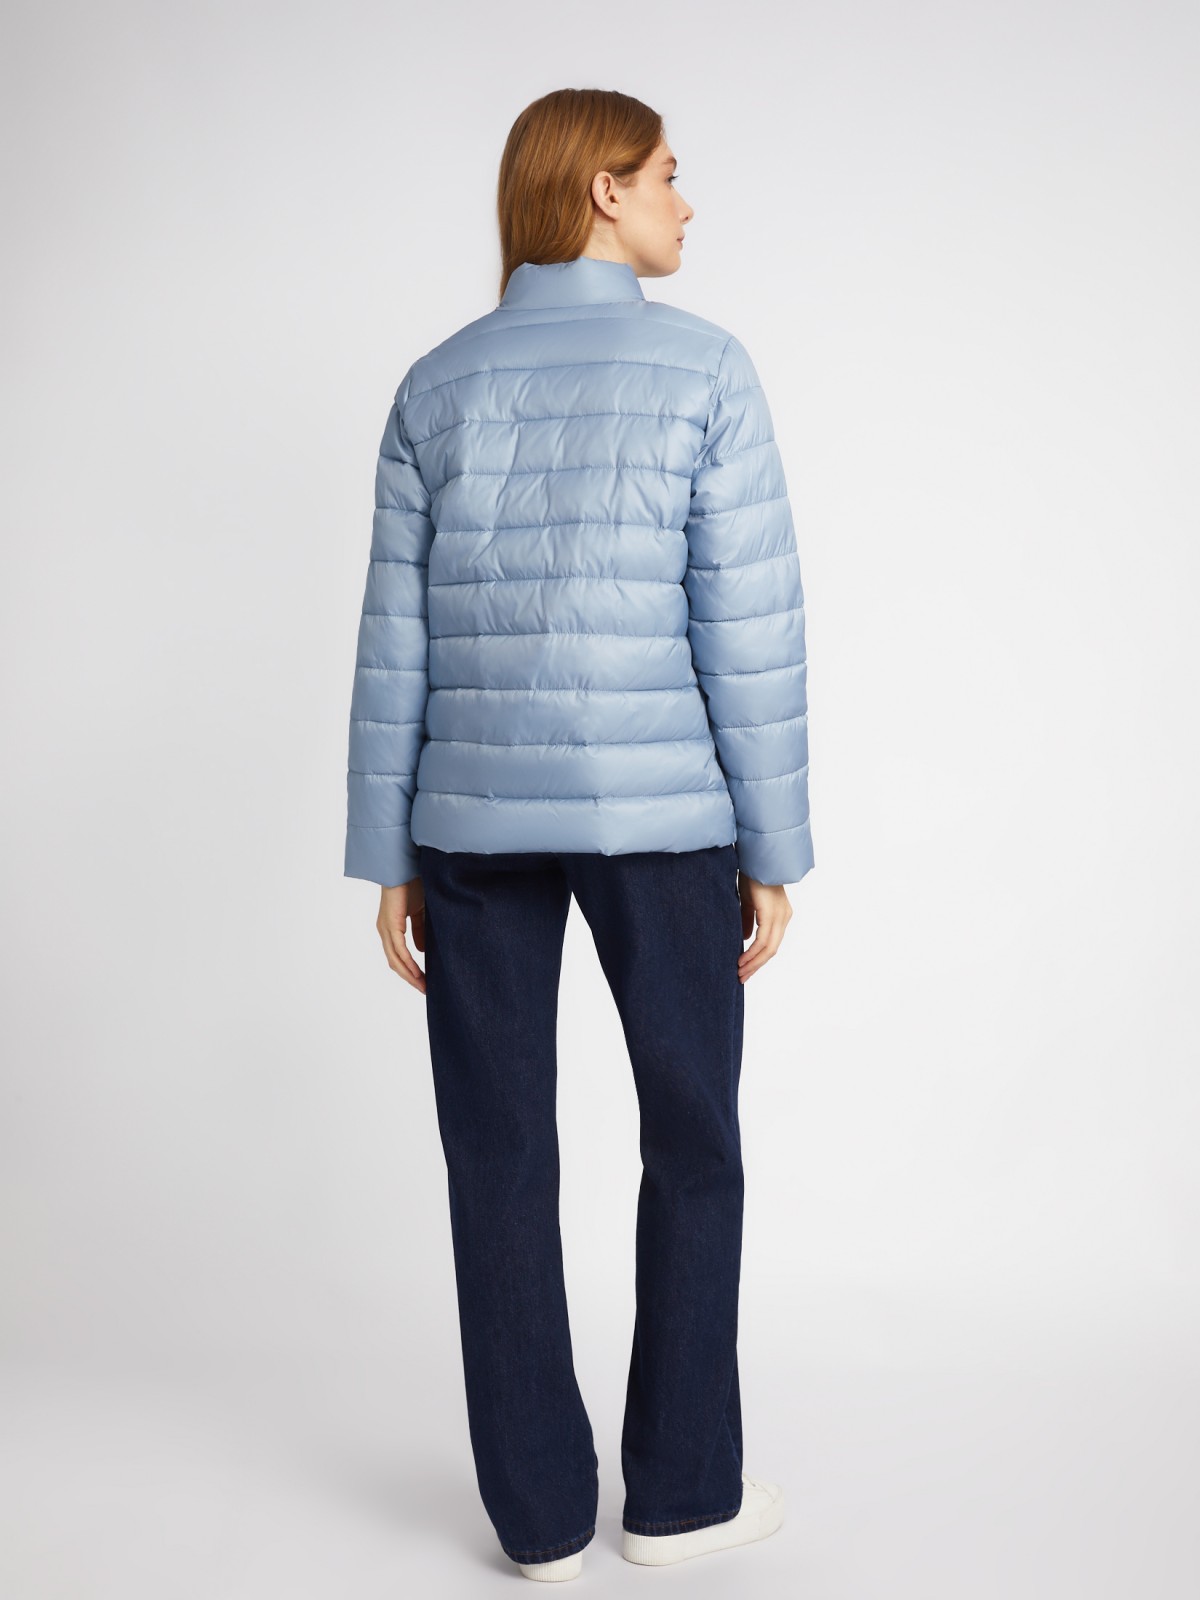 Утеплённая короткая куртка на молнии с воротником zolla 024135112154, цвет голубой, размер S - фото 6